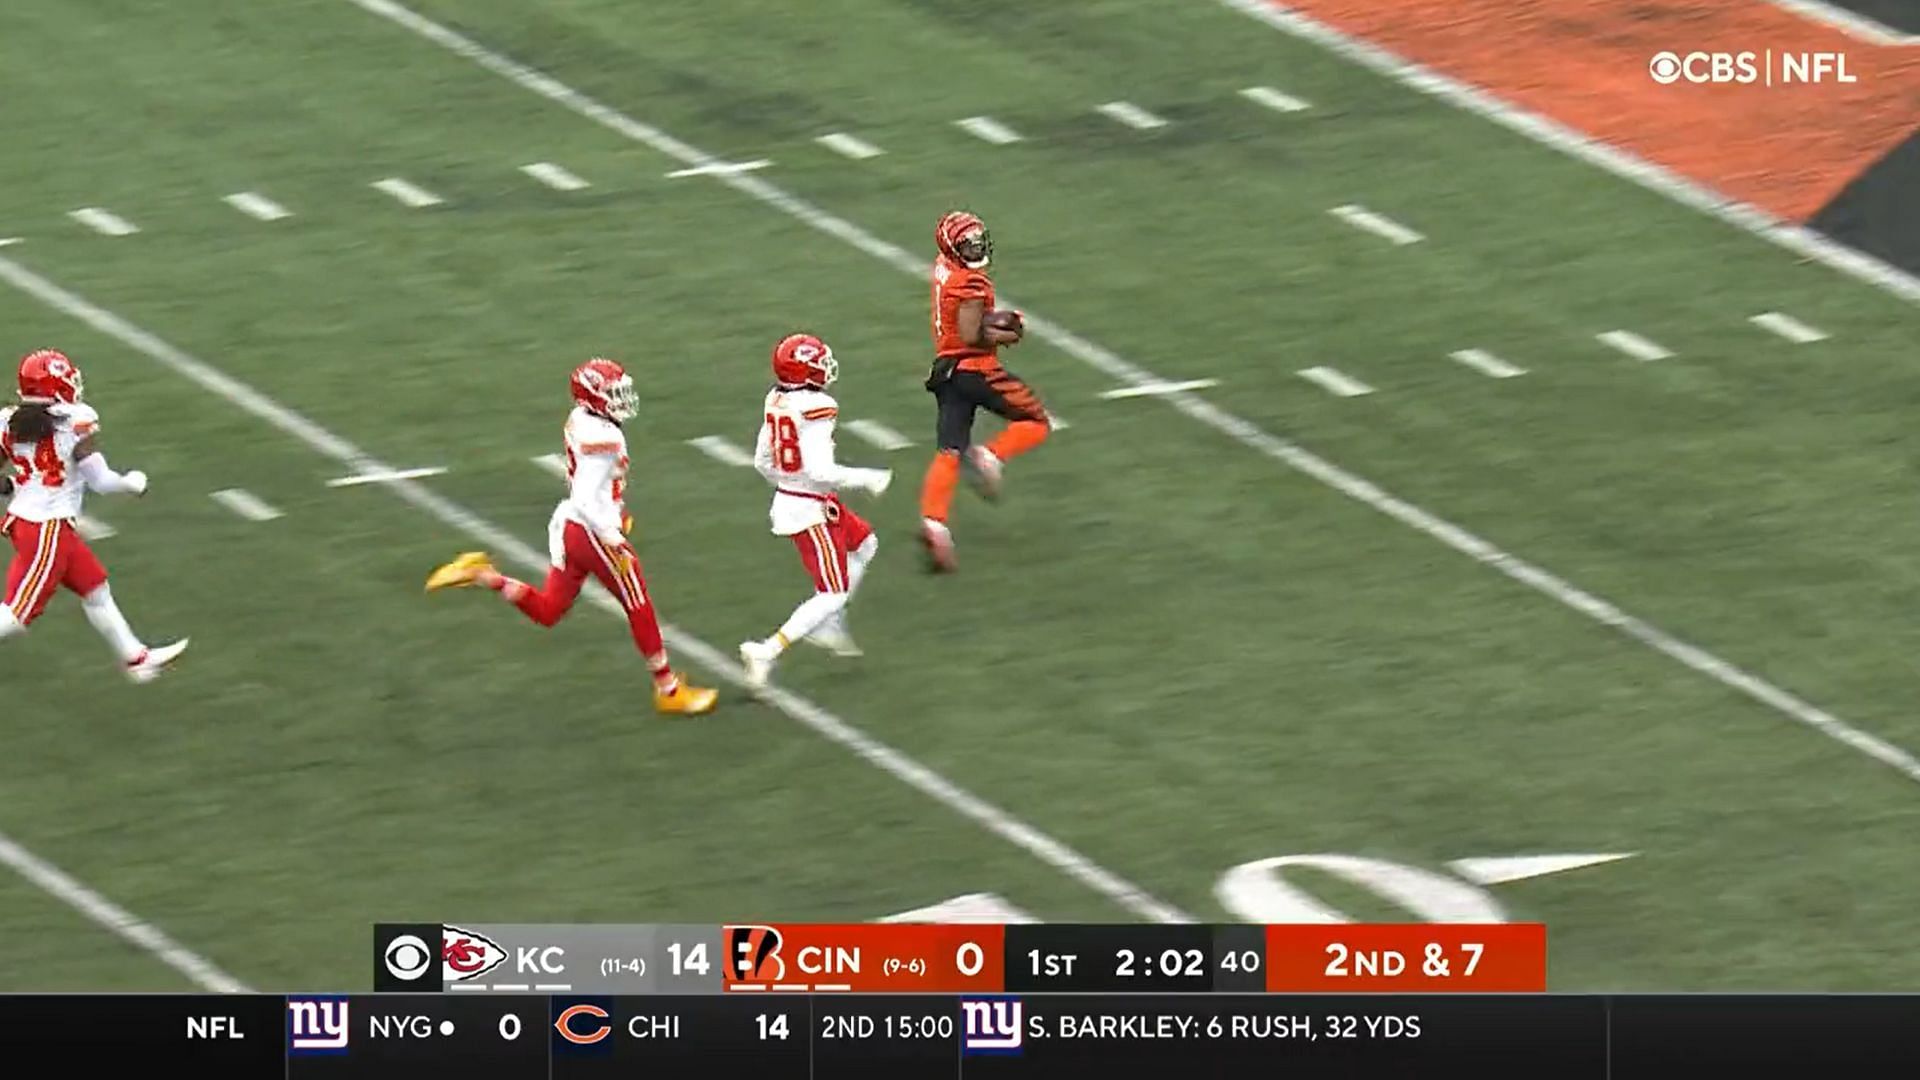 Watch Joe Burrow's rushing touchdown vs. the Chiefs 